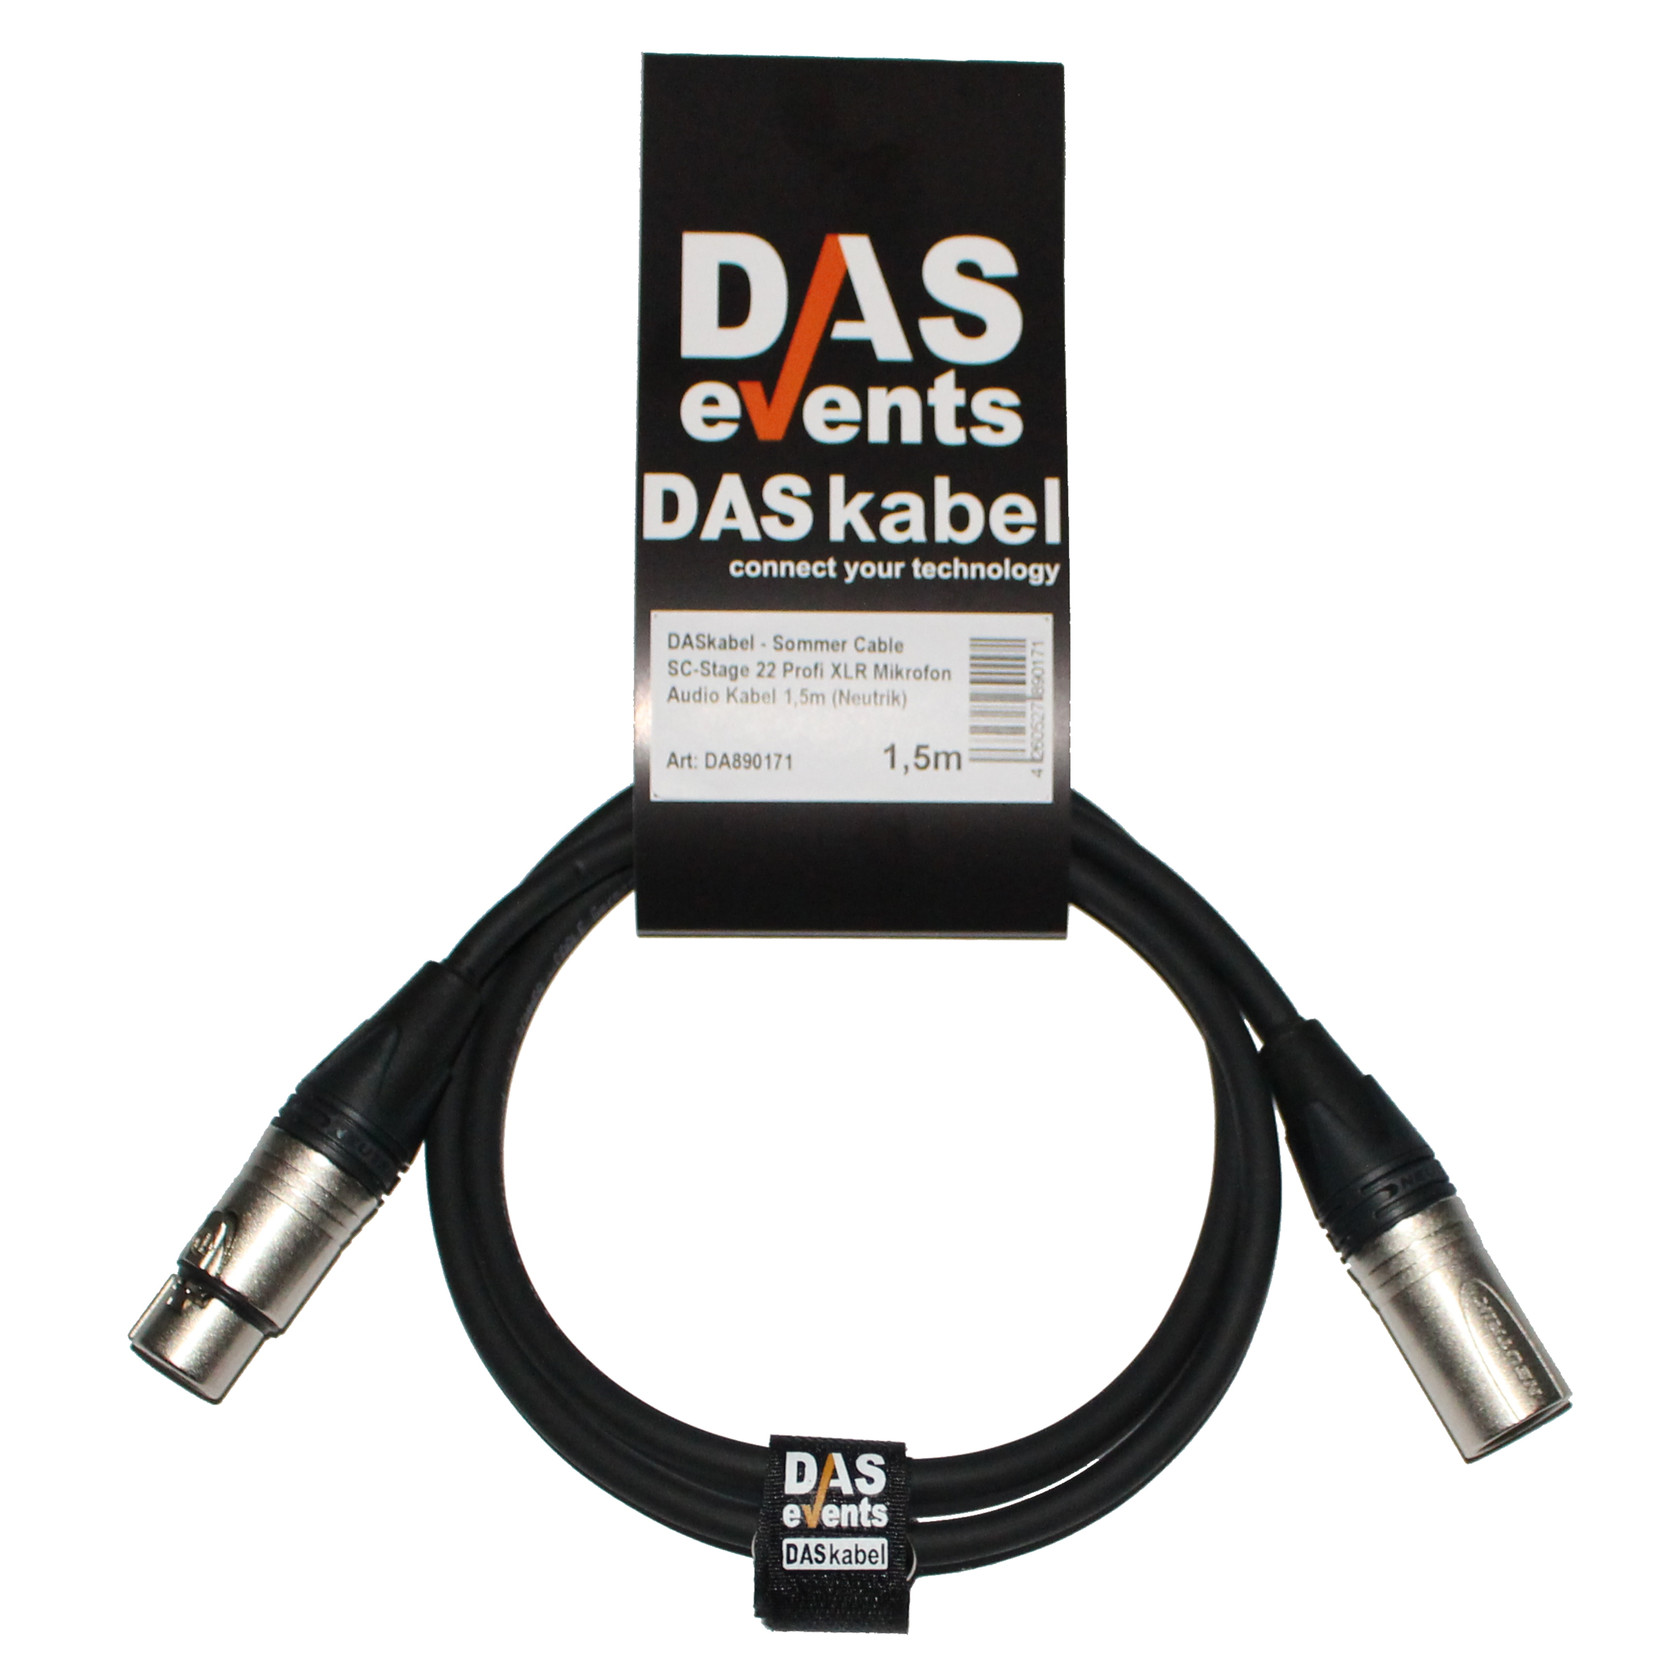 Sommer Cable Binary 234 Profi XLR DMX Mikrofon Kabel 0,5m Neutrik DASkabel 